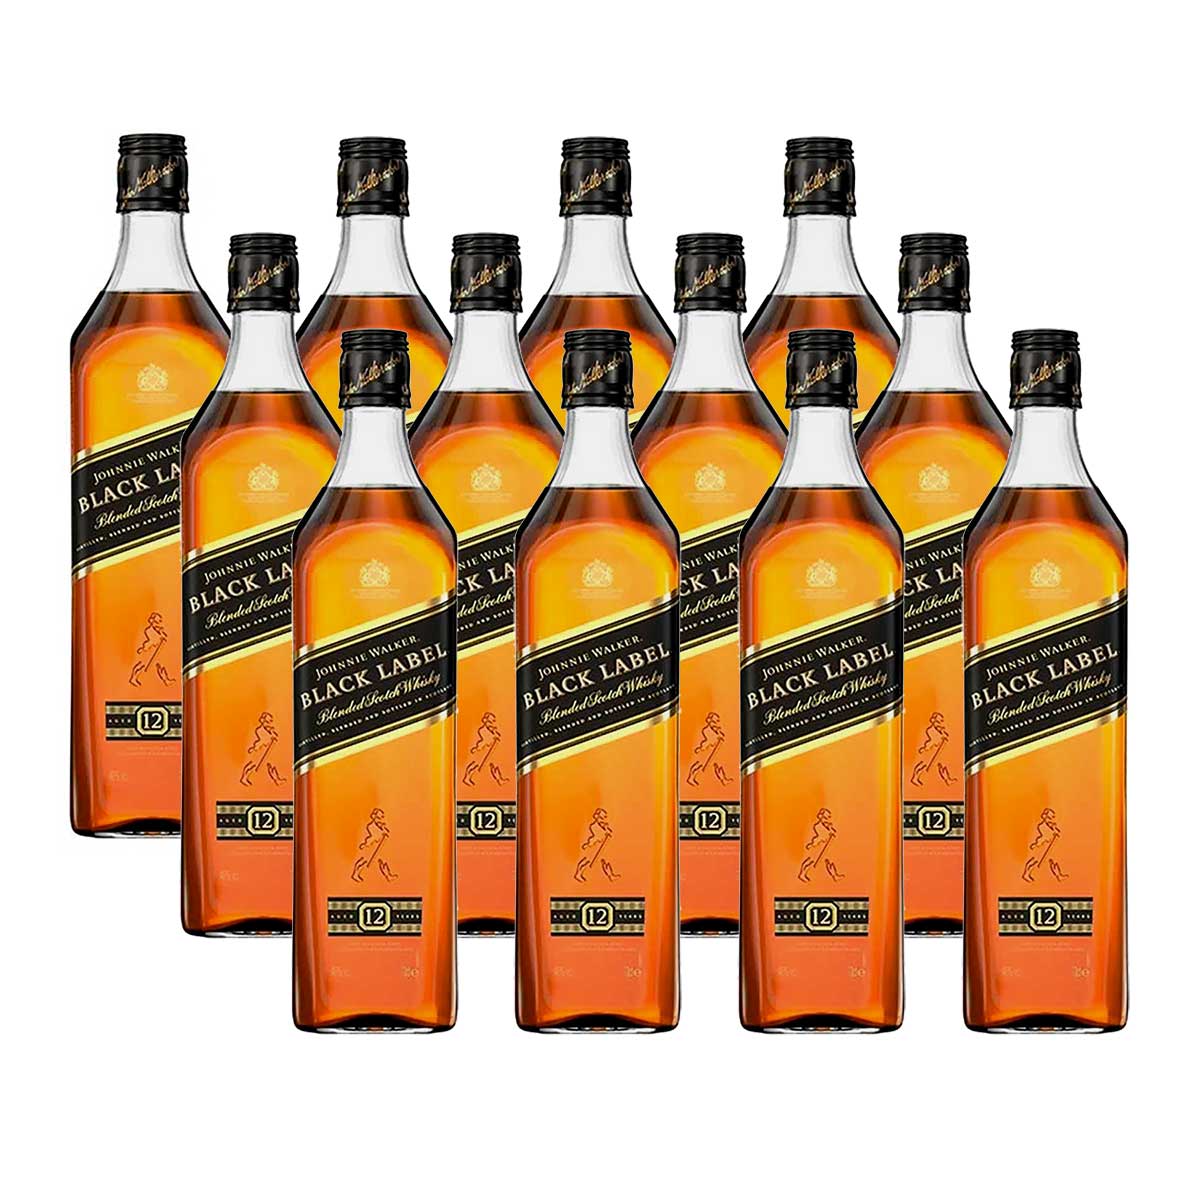 [89,90 a unidade] Whisky Escocês Johnnie Walker Black Label 12 anos 750ml caixa com 12 unidades